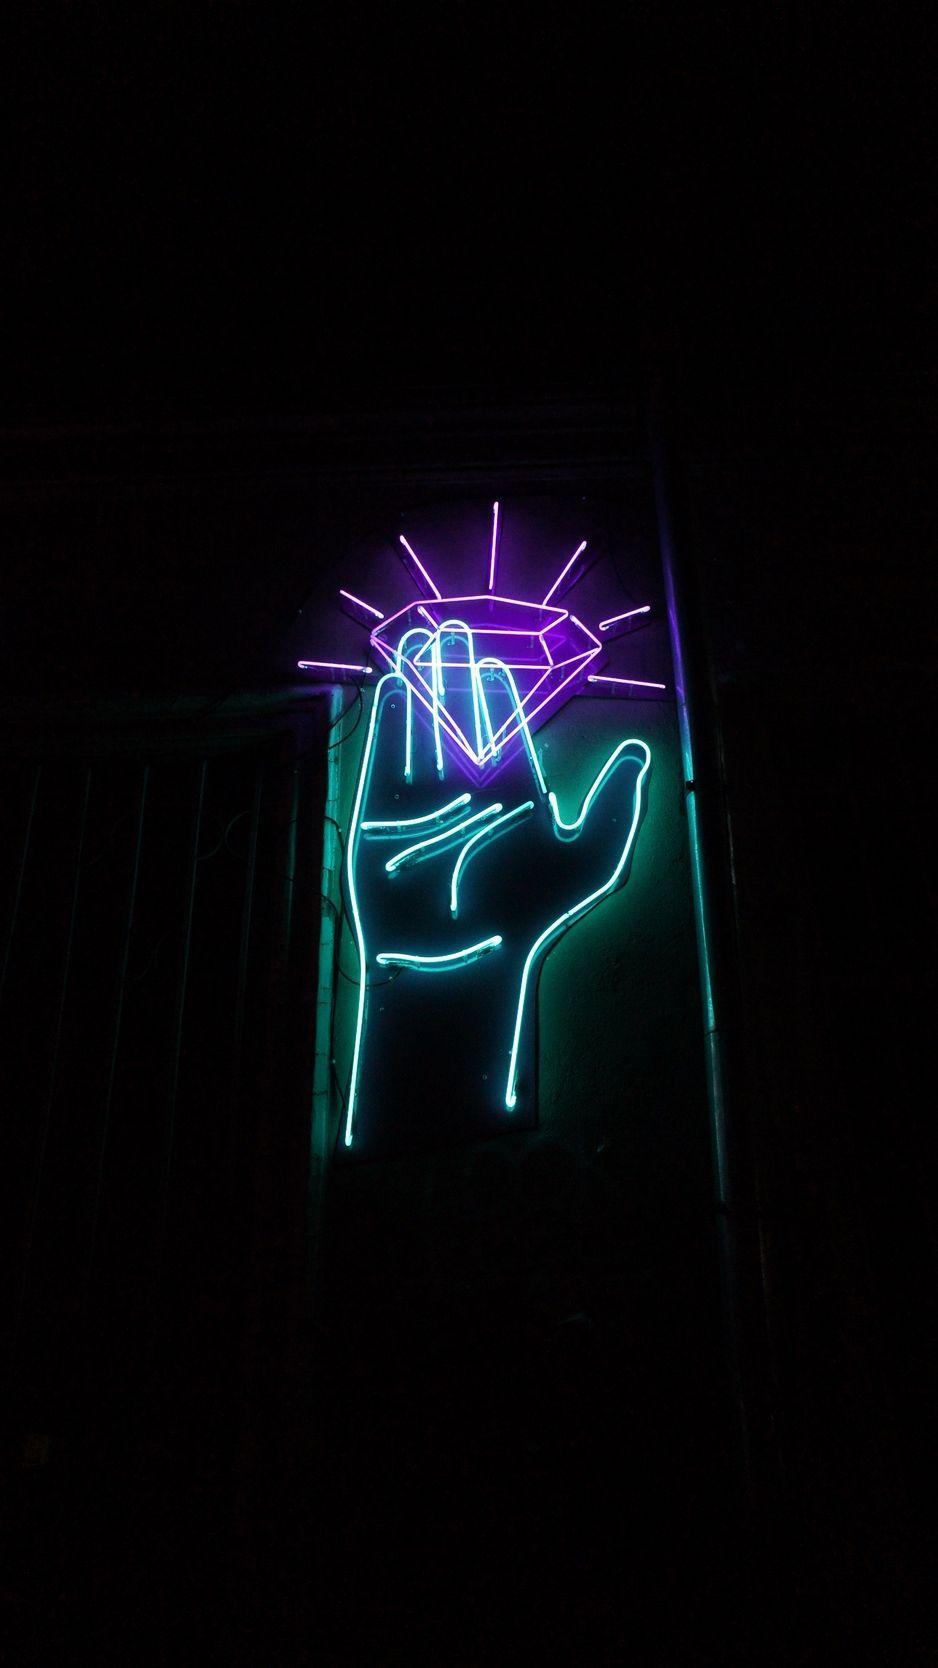 Hands Aesthetic Neon Wallpapers - Top Free Hands Aesthetic Neon ...